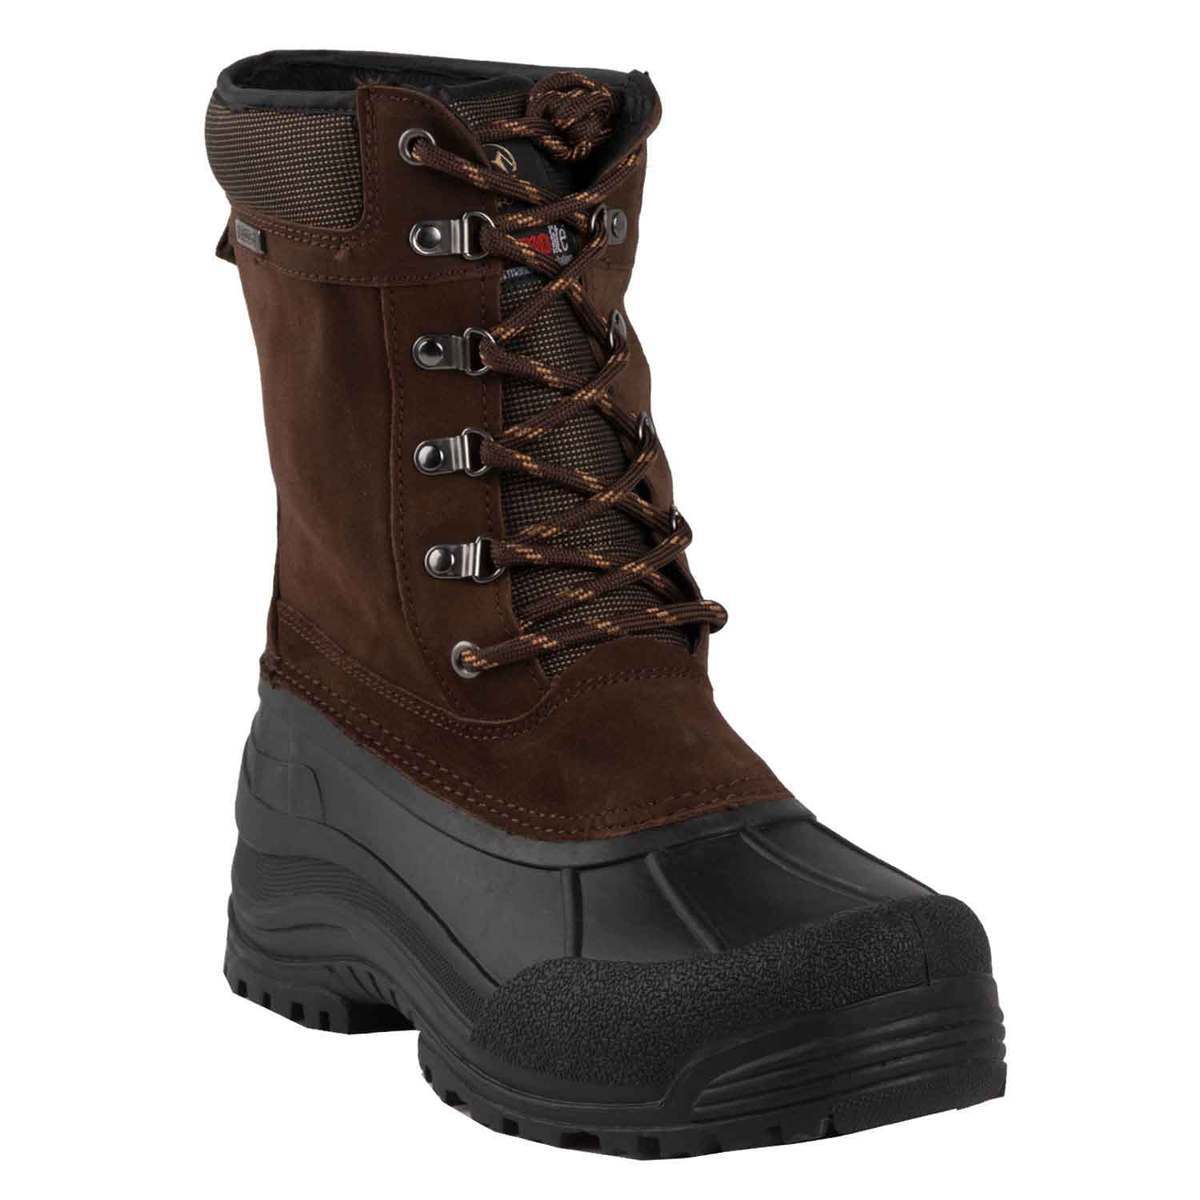 https://www.sportsmans.com/medias/tamarack-mens-tundra-ii-waterproof-winter-boots-brown-size-9-1526391-1.jpg?context=bWFzdGVyfGltYWdlc3w2NjkyMHxpbWFnZS9qcGVnfGFXMWhaMlZ6TDJnME1TOW9NVGd2T1Rjek1qazRPRE0zTURrM05DNXFjR2N8ZWRhMDVmNTI3OTVlNDViYzg3MWUyOGIwZDE0Y2MzNTc5ZWNiYzkzYjJhNmRjMjM2MGFiN2ViZDhmNmJiYzYwMg